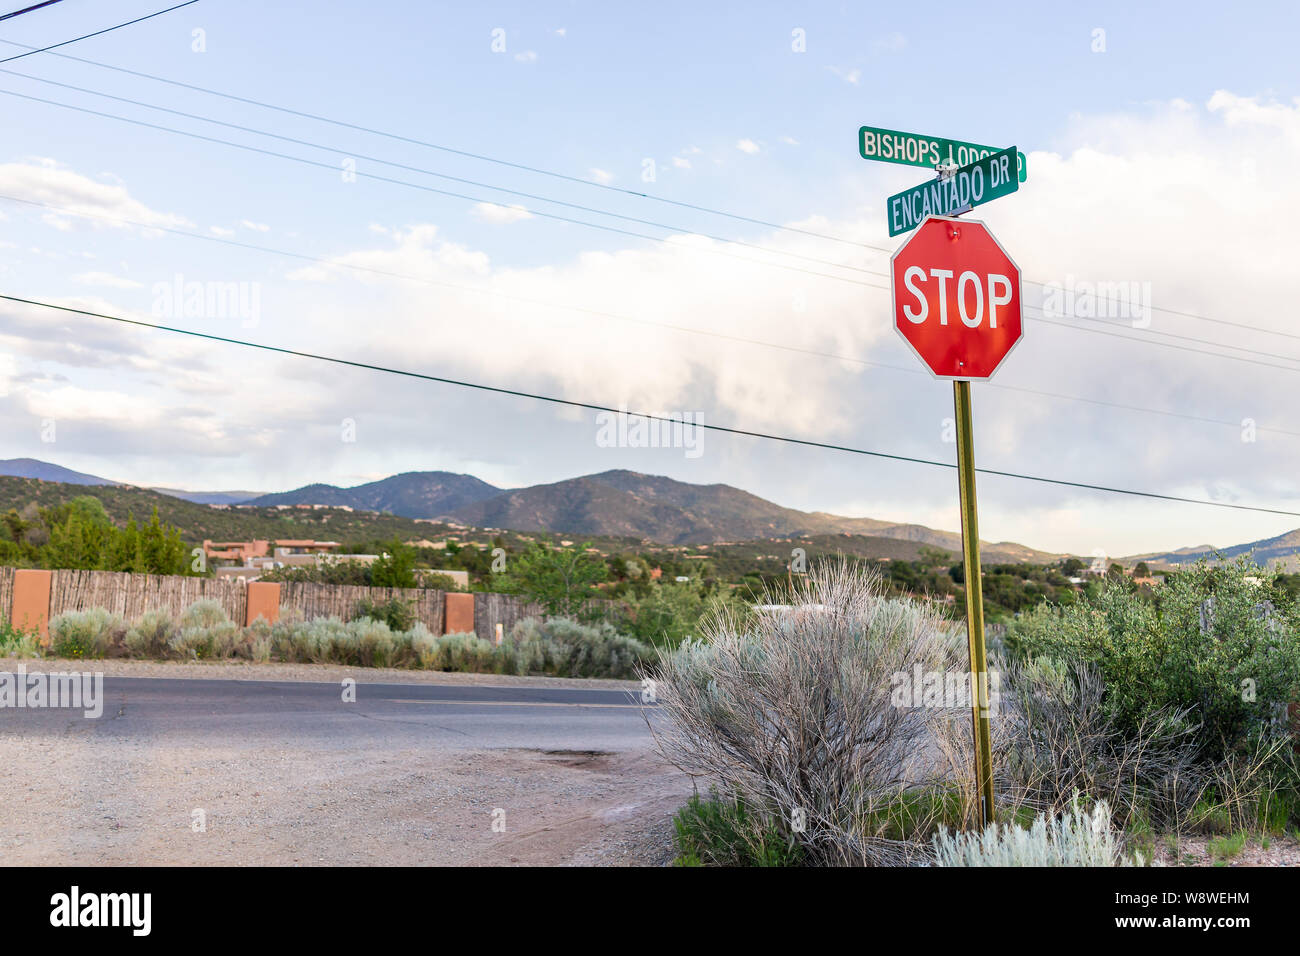 Stop-Schild am Schnittpunkt von Encantado fahren und Bischöfe Lodge Road in Santa Fe, New Mexico am Abend Sonnenuntergang und Berge Stockfoto